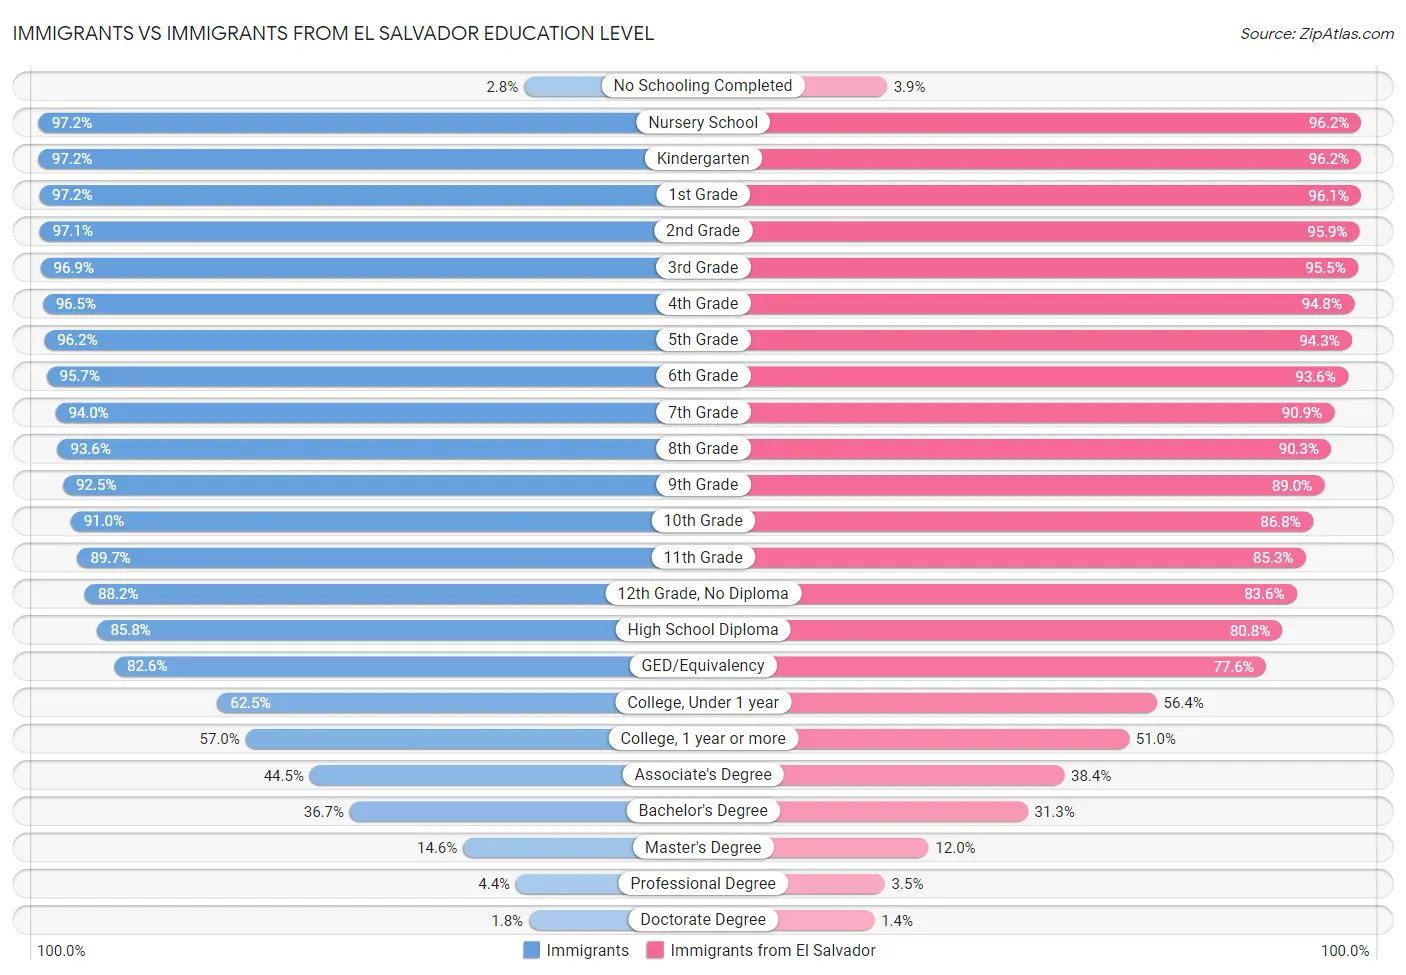 Immigrants vs Immigrants from El Salvador Education Level